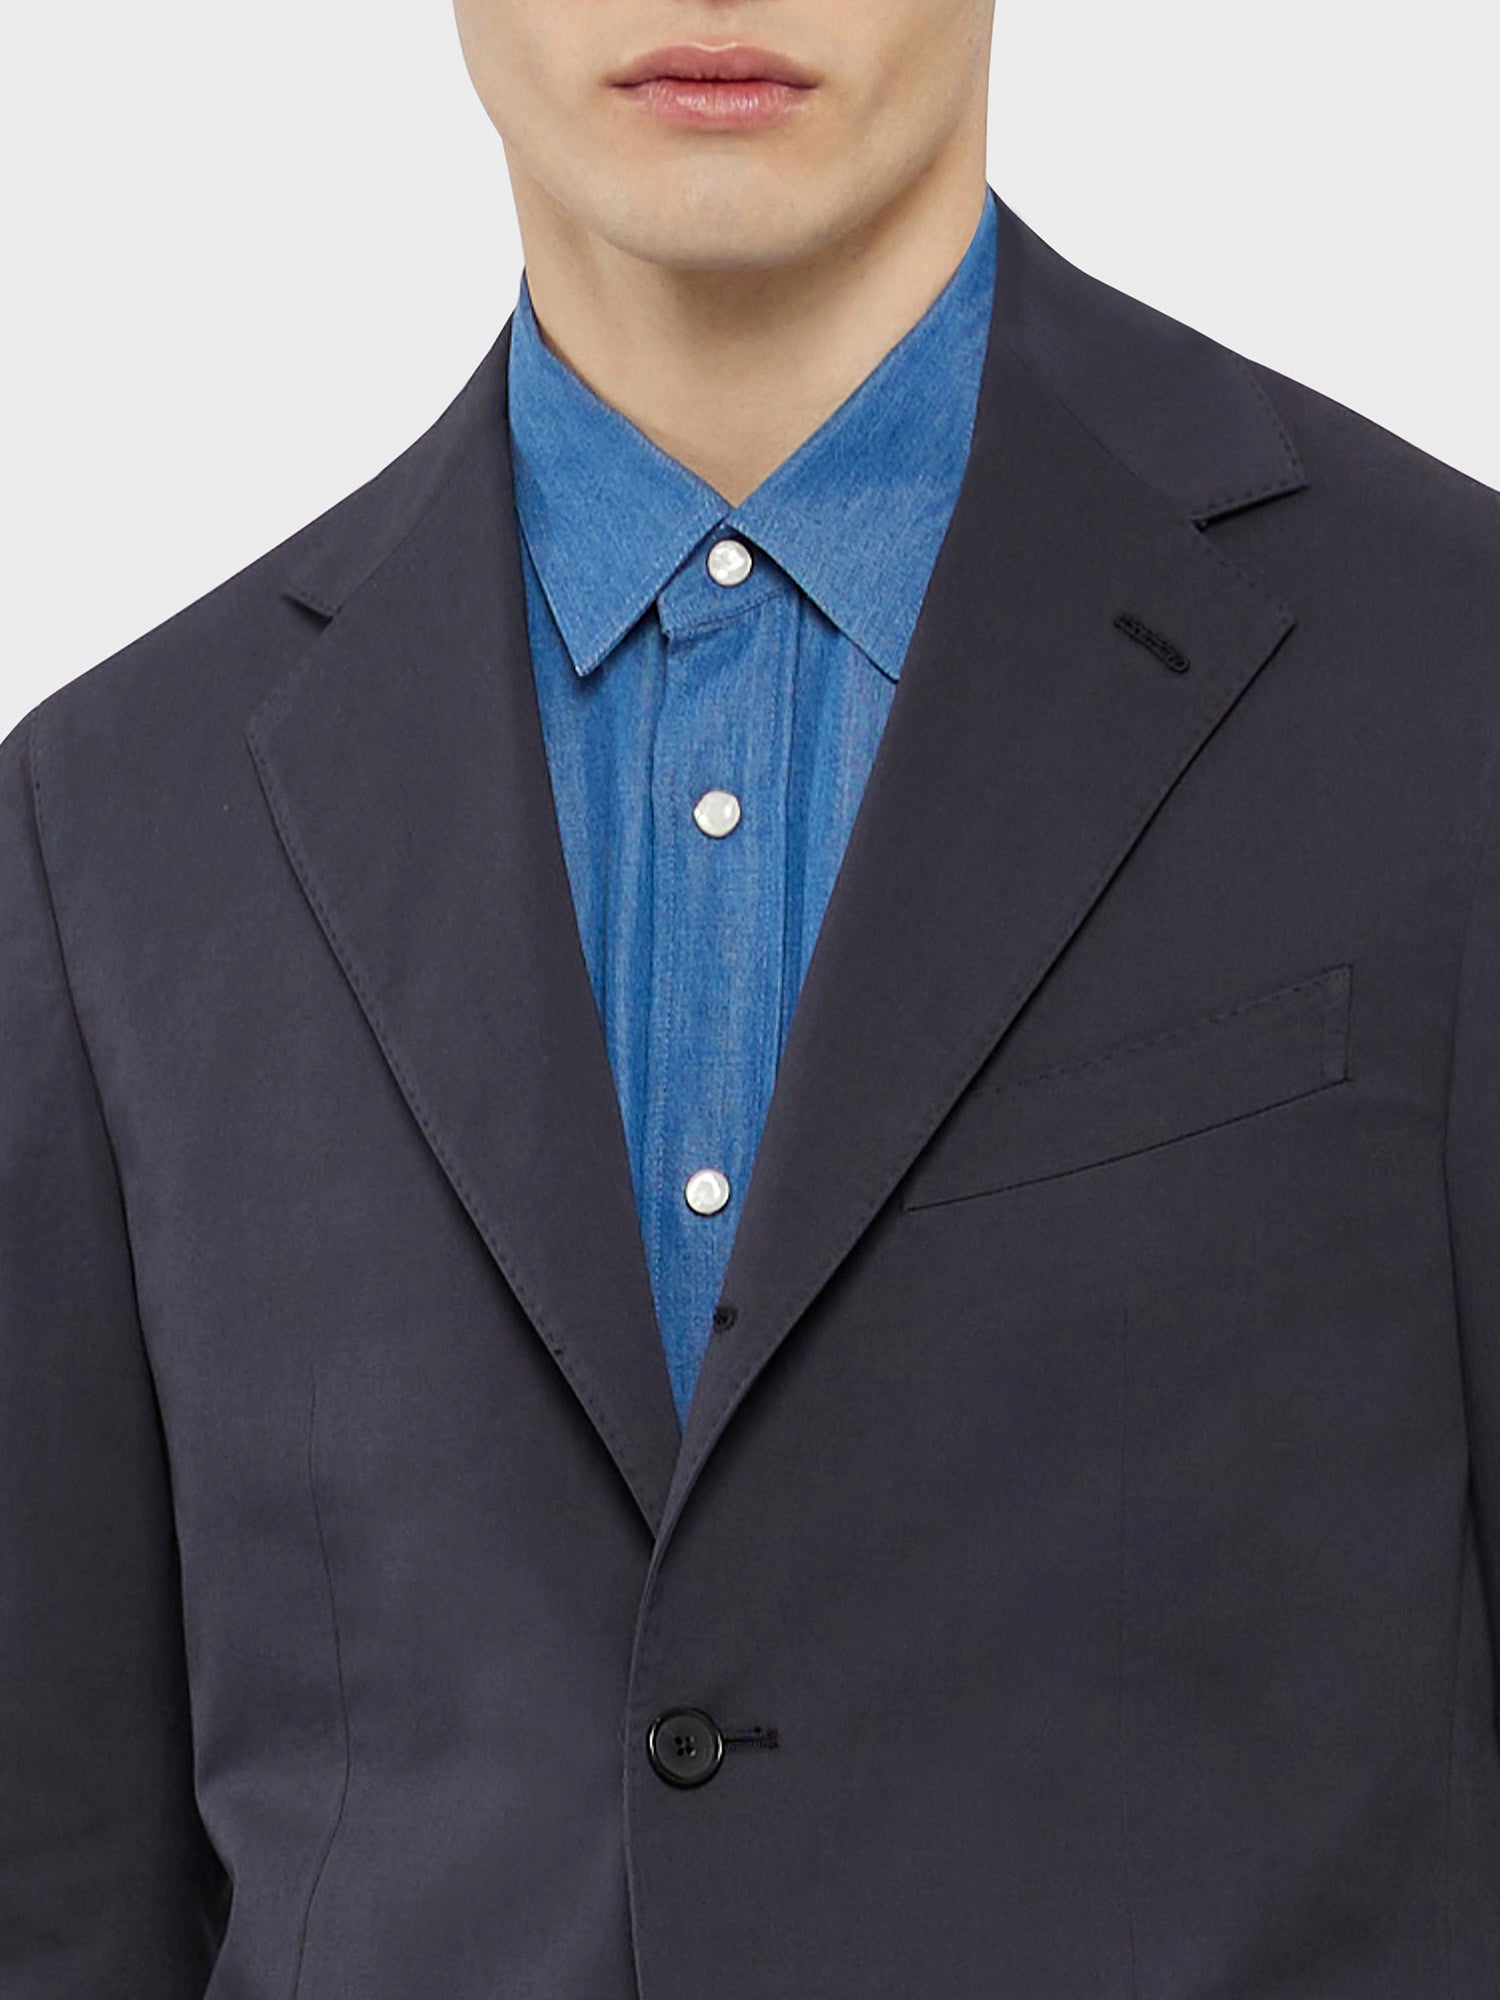 Caruso Menswear Abbigliamento Uomo Abito Aida in cotone-elastane blu drop 8R dettaglio giacca